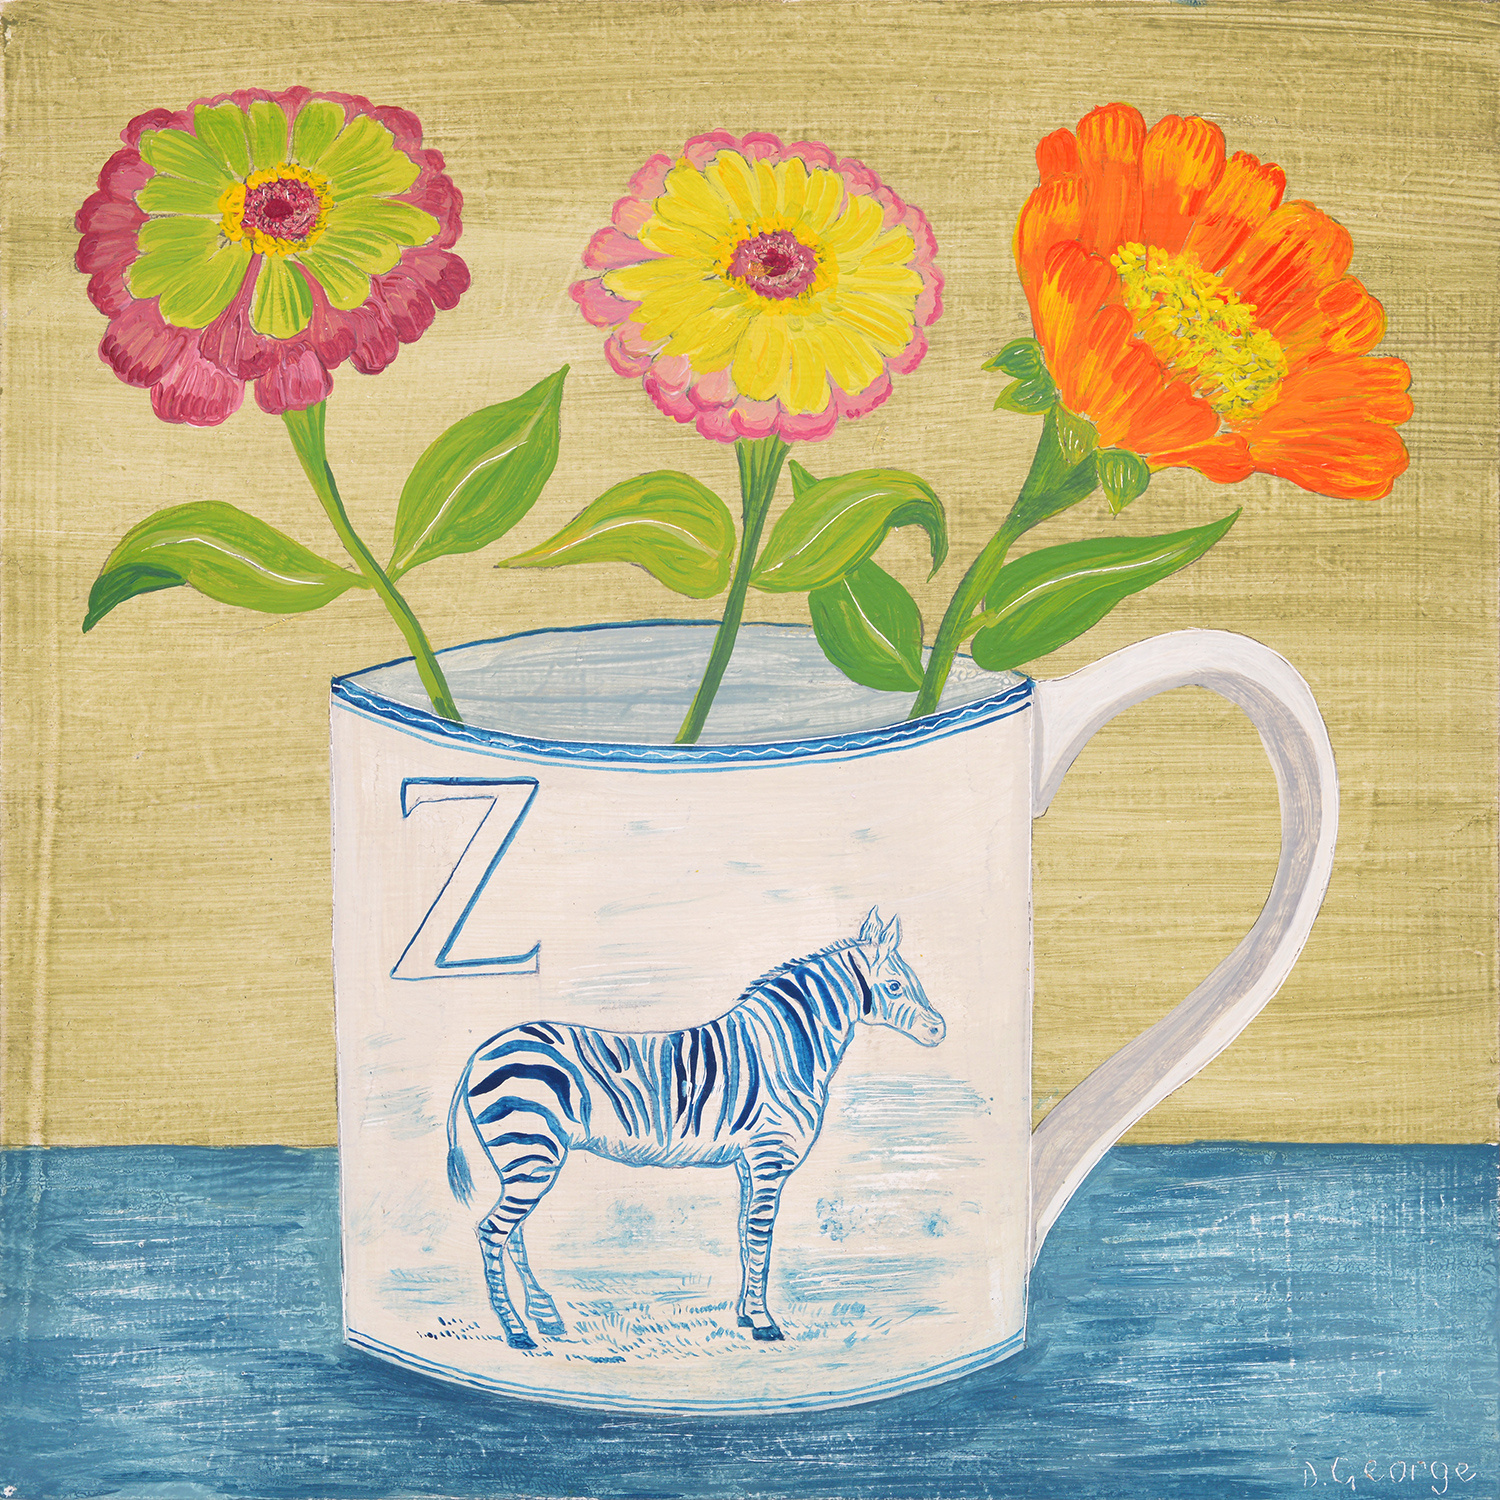 Zebra and Zinnias by Debbie George